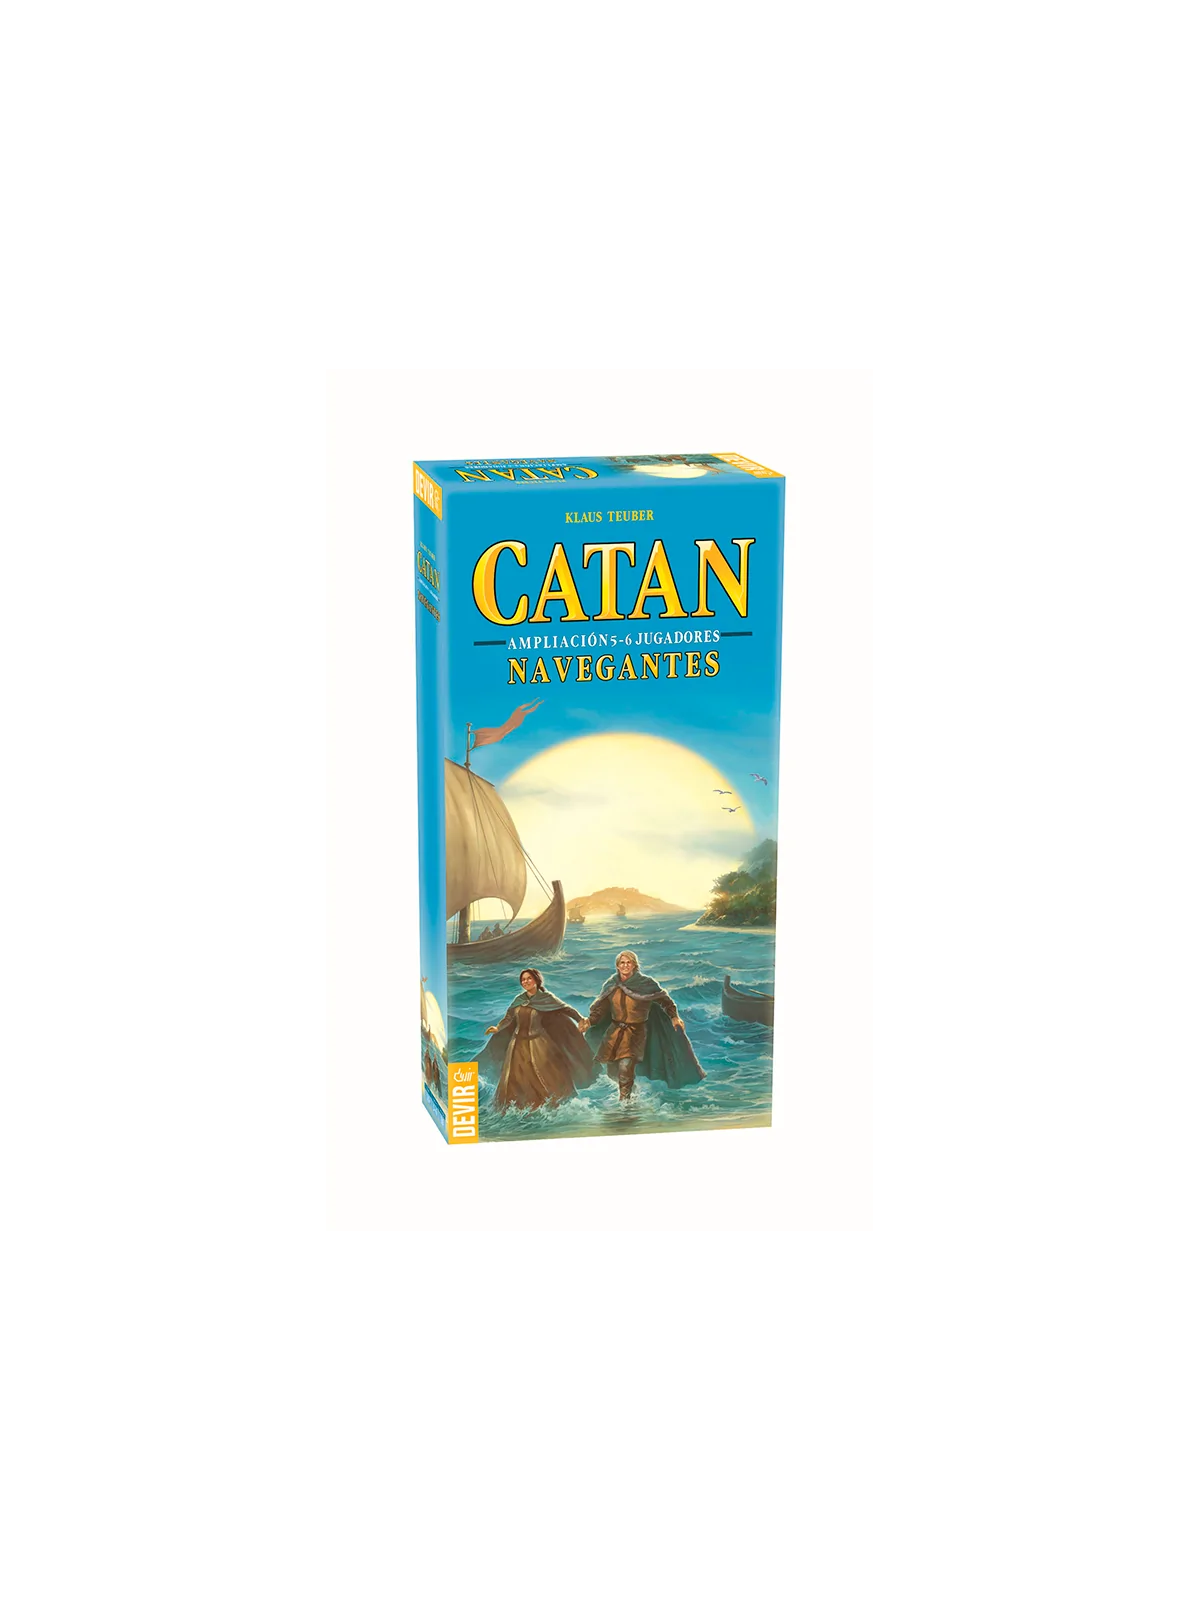 Comprar Catan: Navegantes de Catan 5-6 Jugadores barato al mejor preci